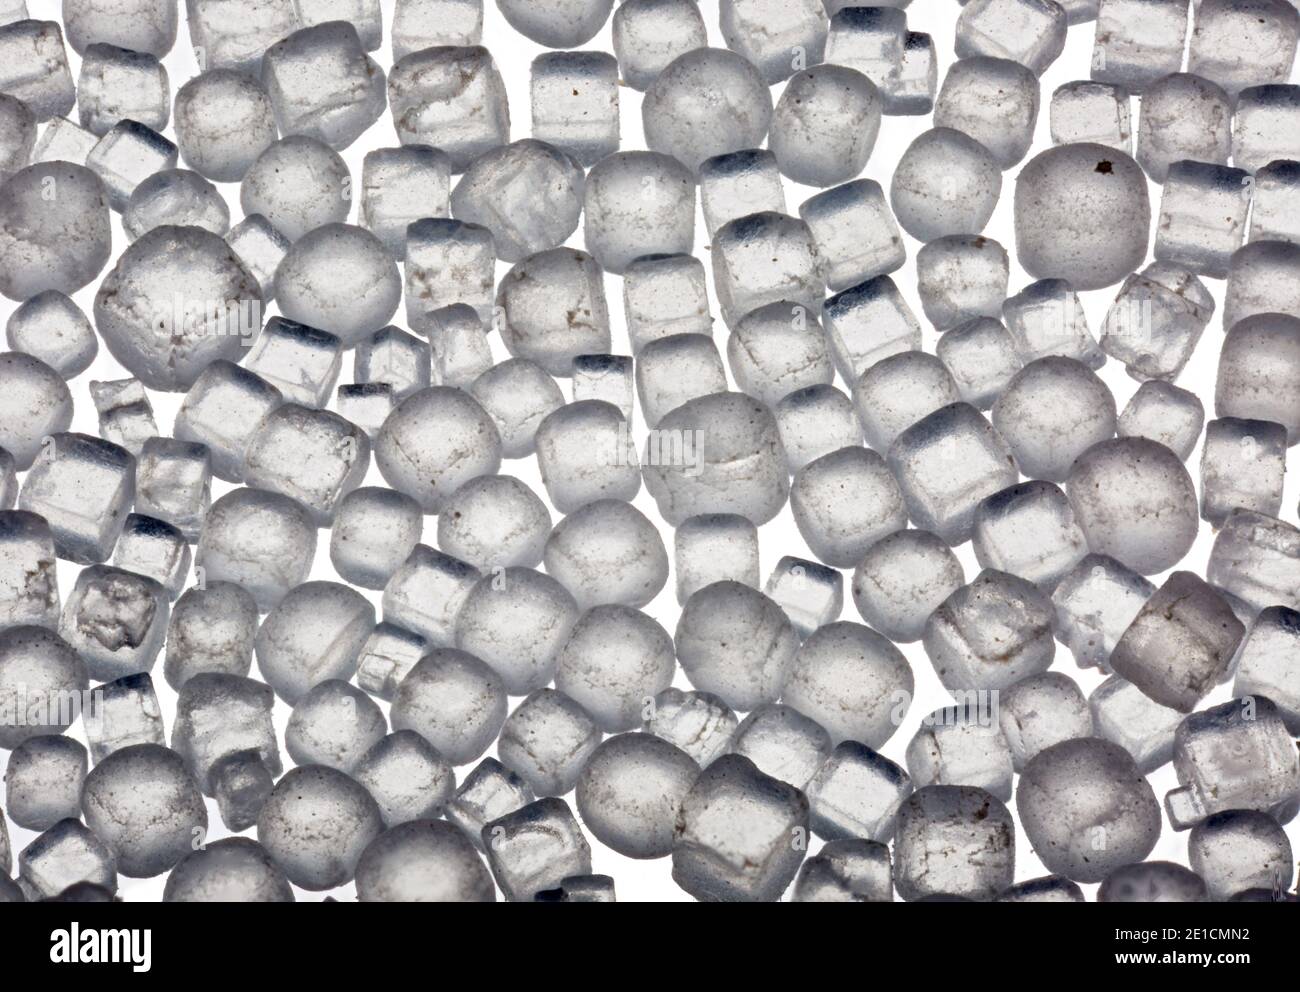 Makrobild von jodiertem Salz mit 5-facher Vergrößerung, aufgenommen auf Ein weißer Hintergrund Stockfoto